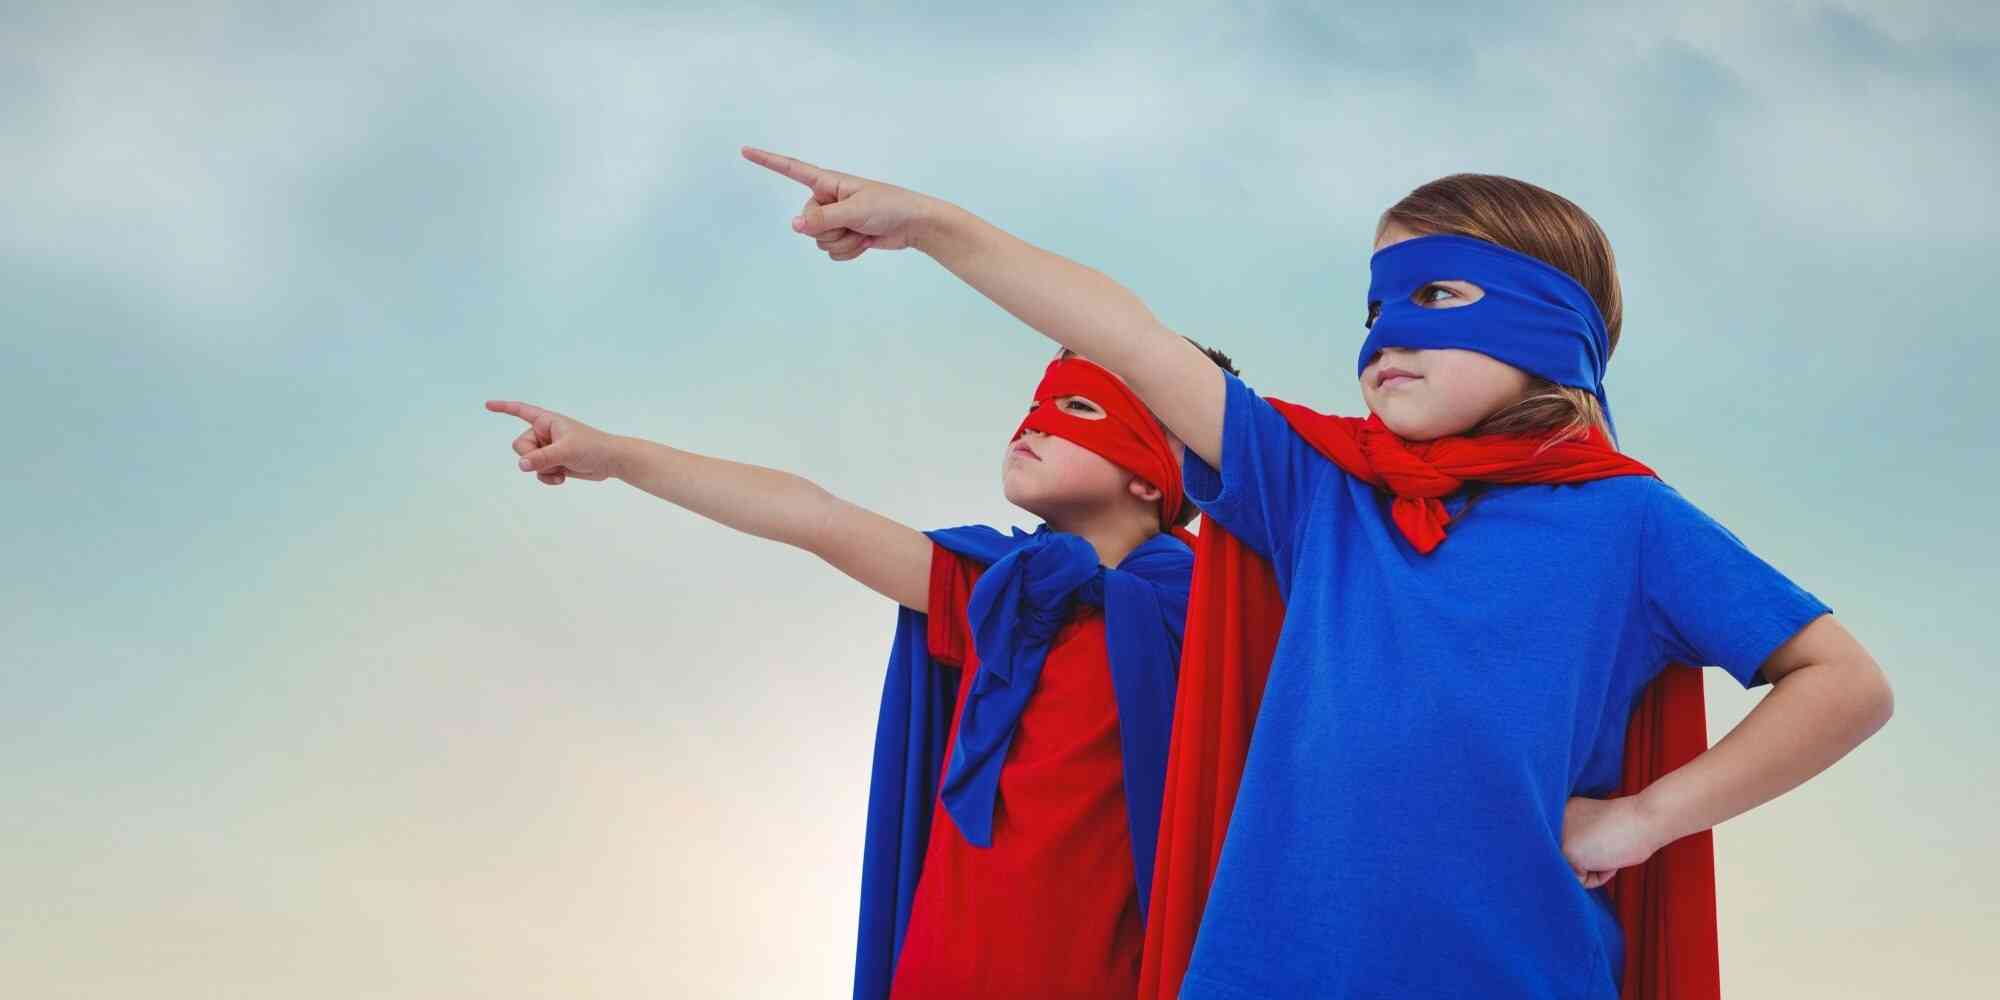 图中两个穿着超级英雄服装的小朋友，手拉着手望着天空。